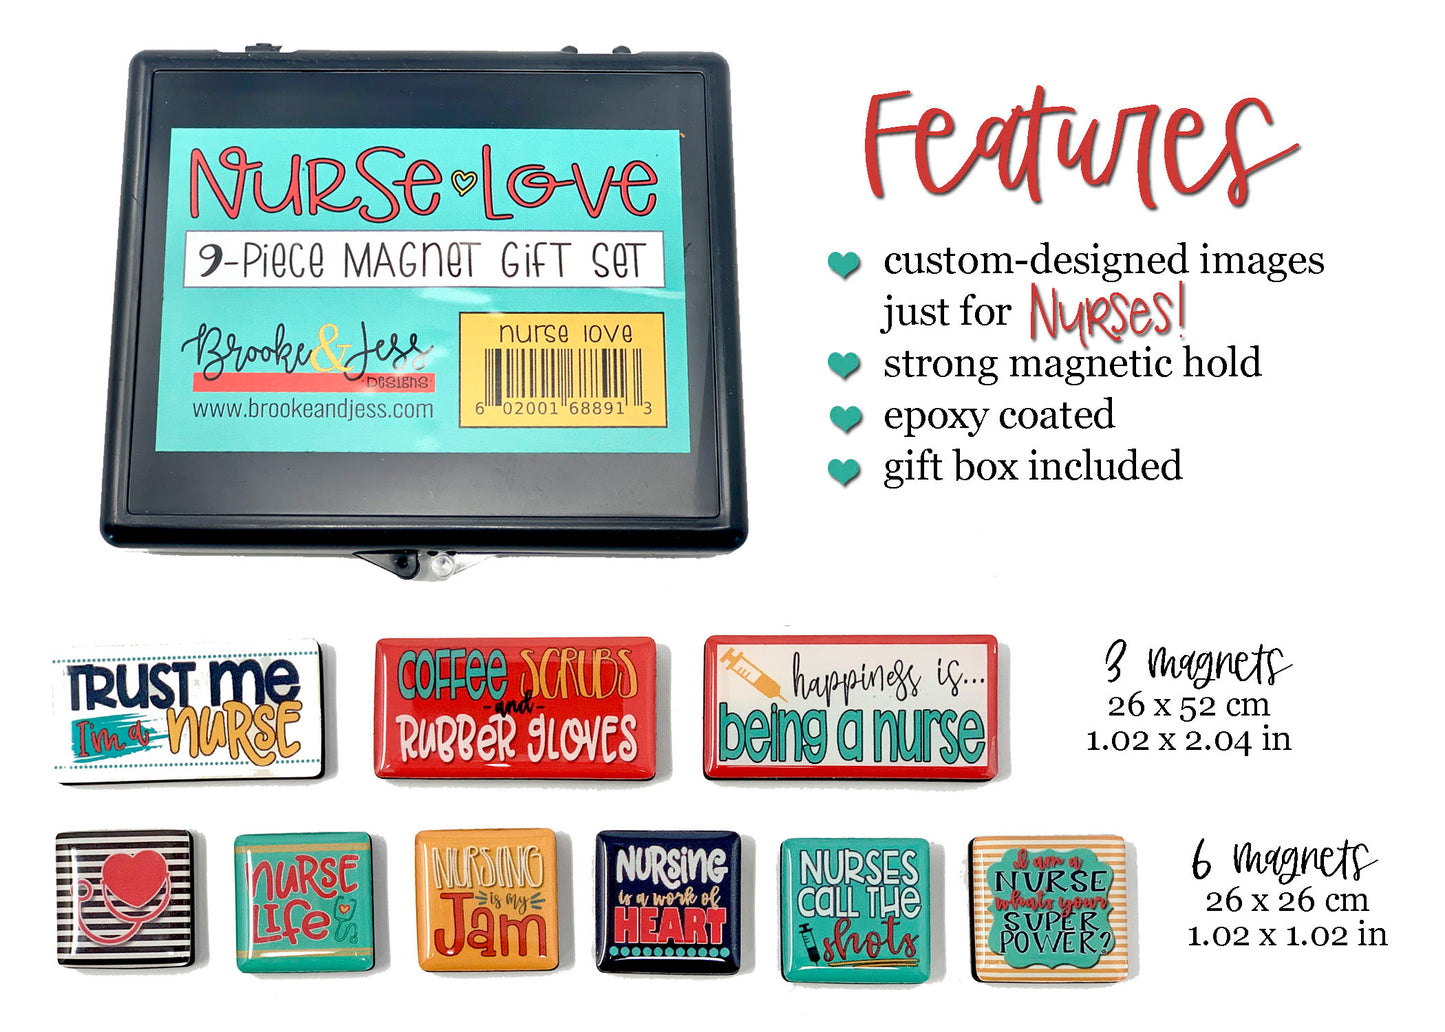 "Nurse Love" Magnet Gift Set for Nurses - 9 Pieces